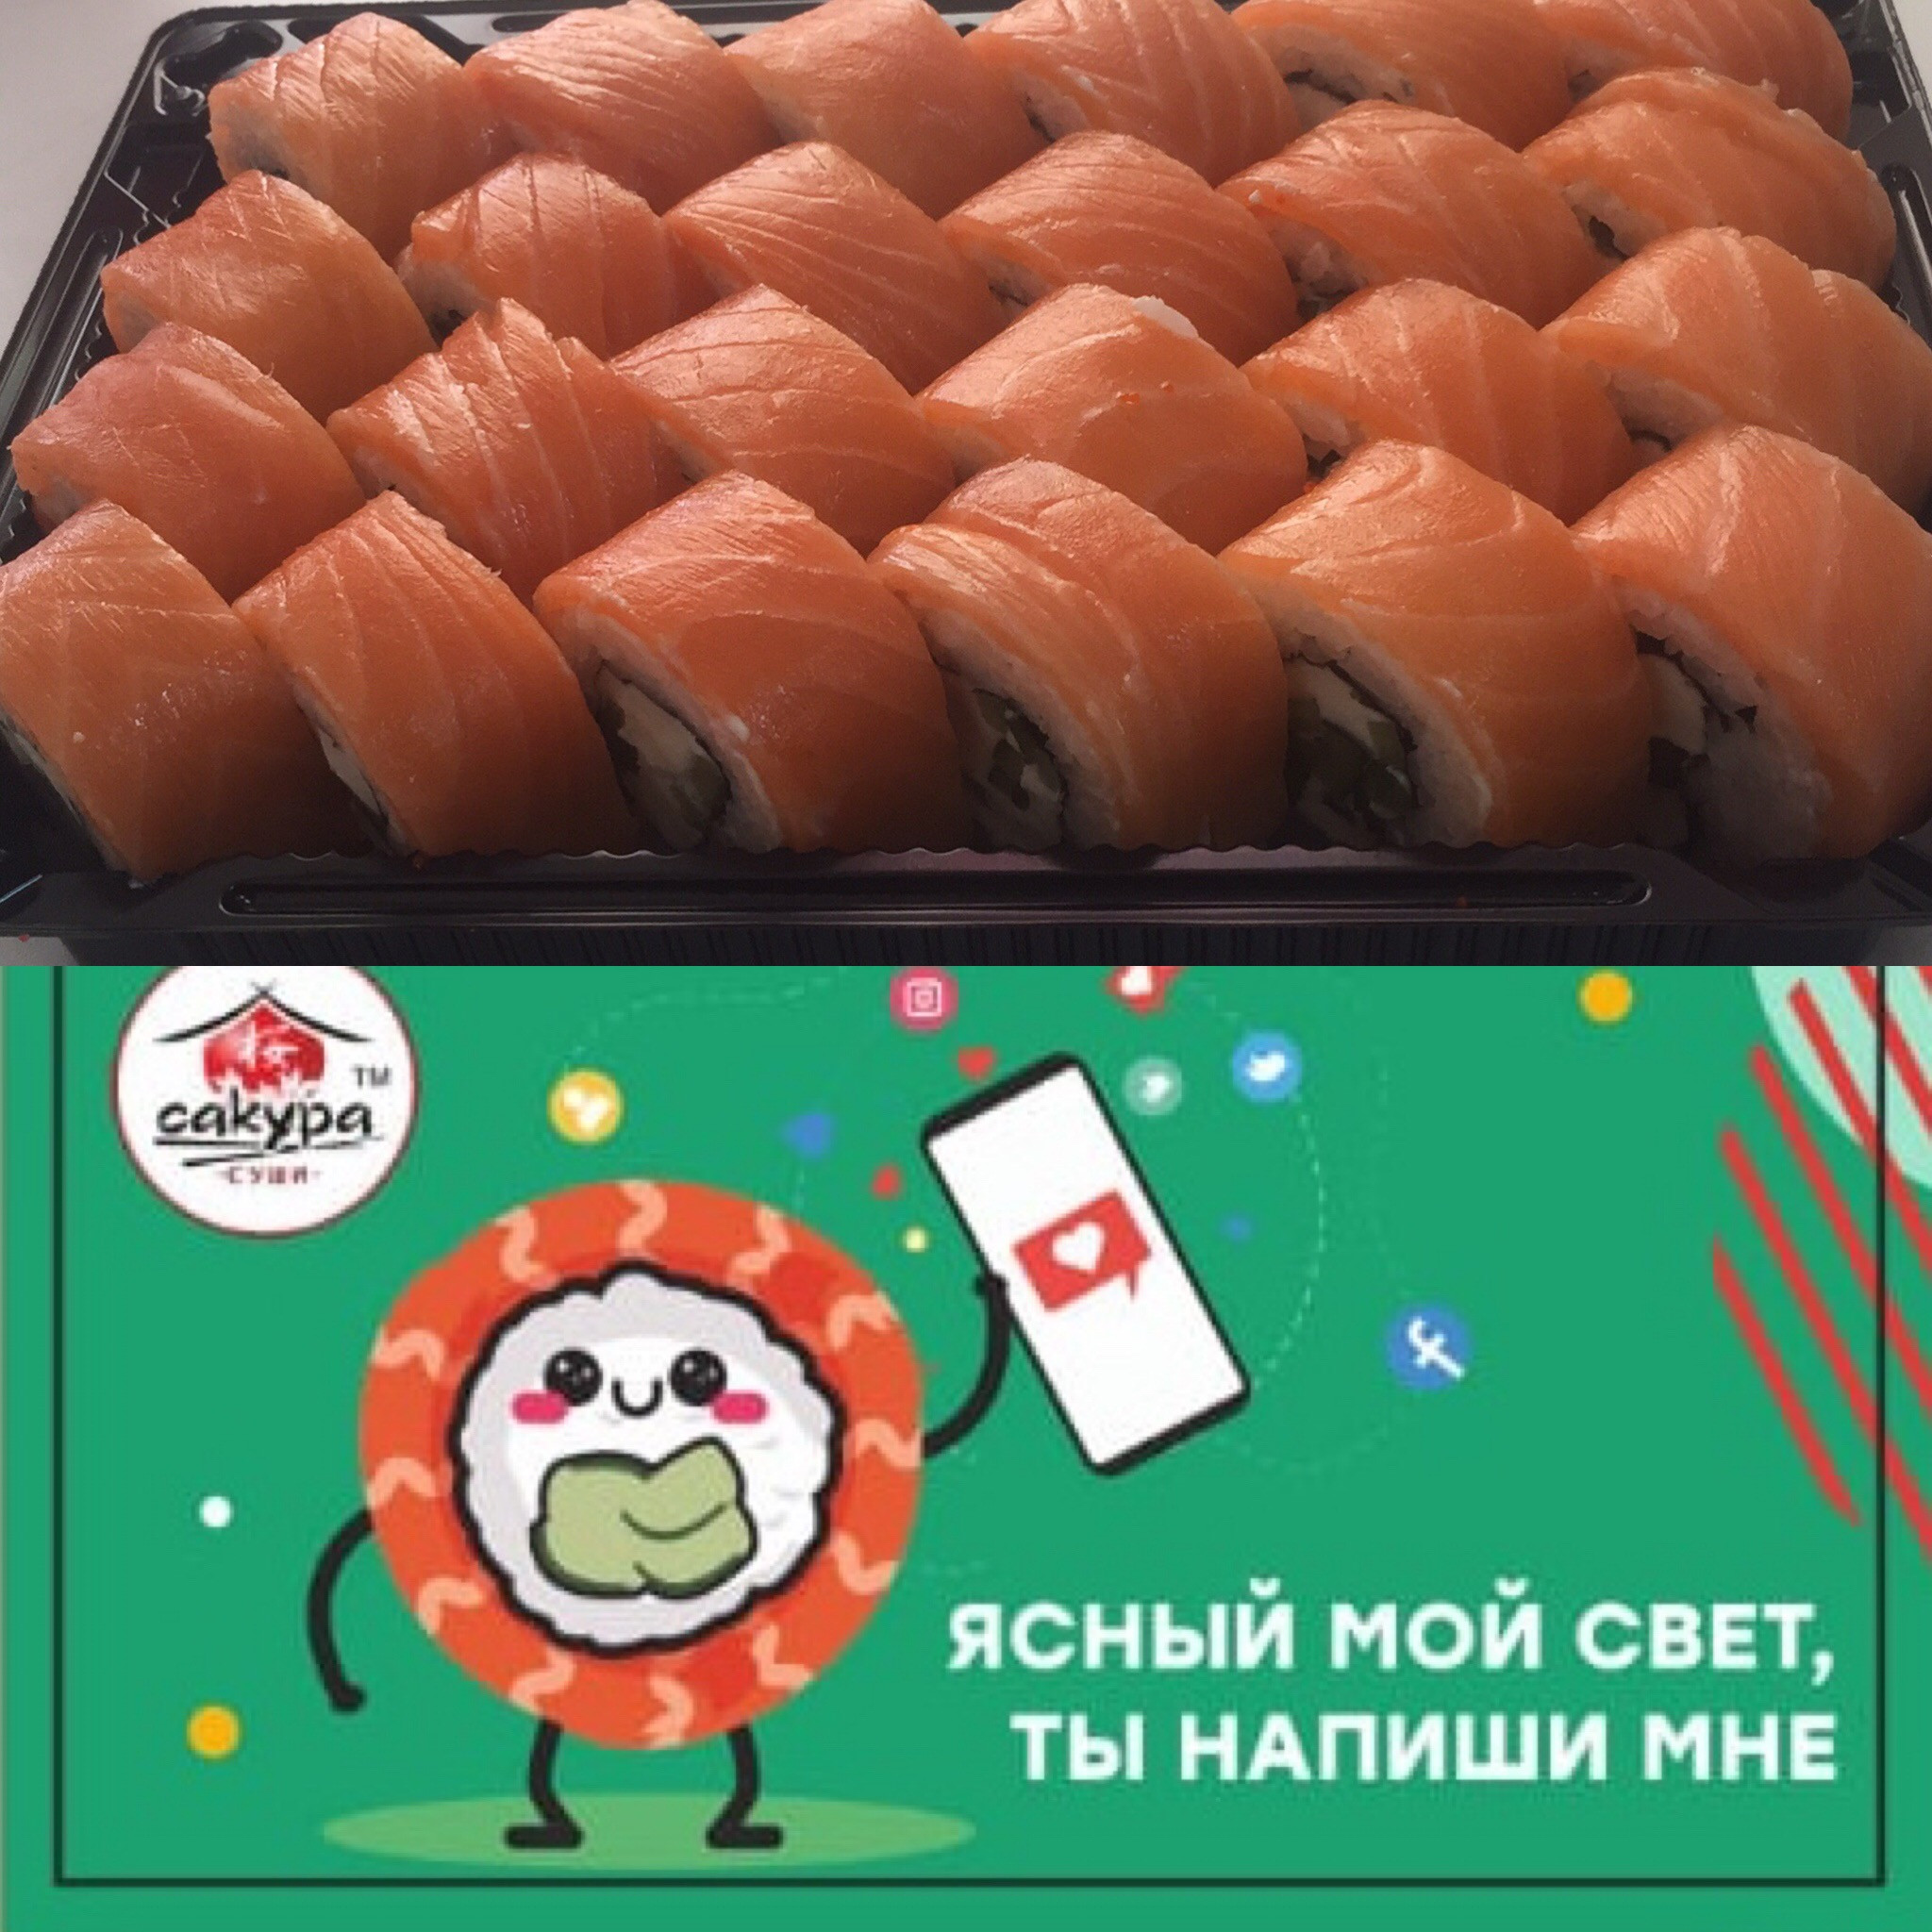 Отзывы сакура суши в новосибирске фото 10